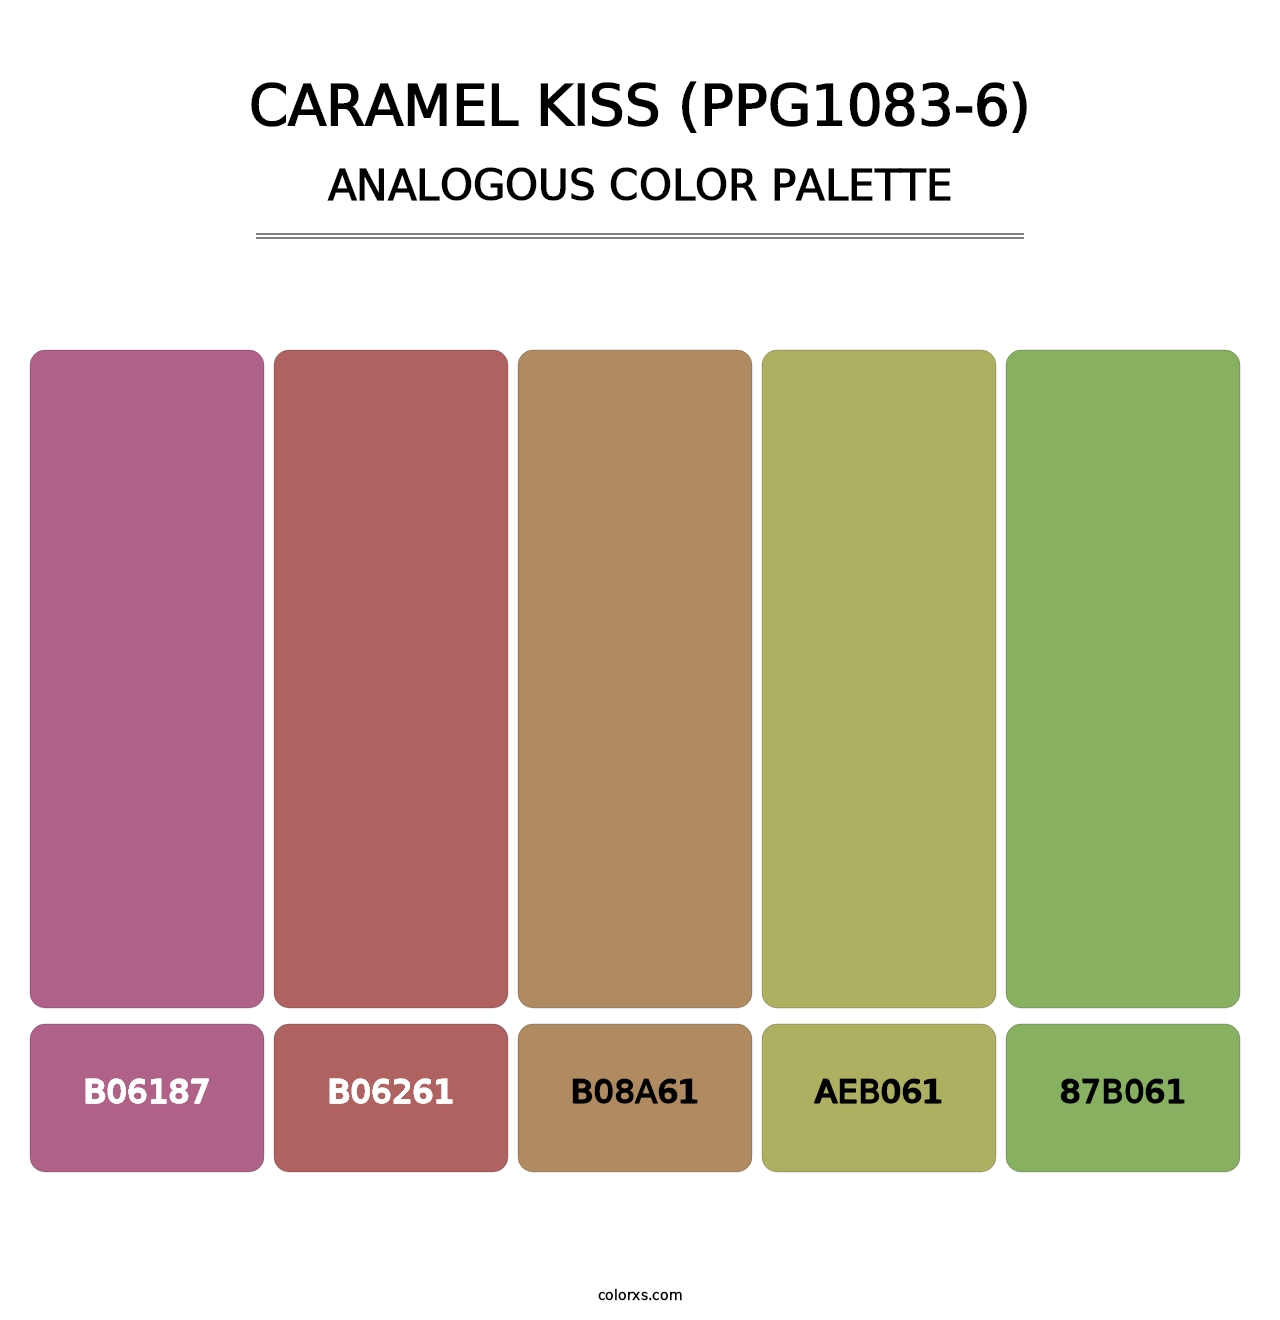 Caramel Kiss (PPG1083-6) - Analogous Color Palette